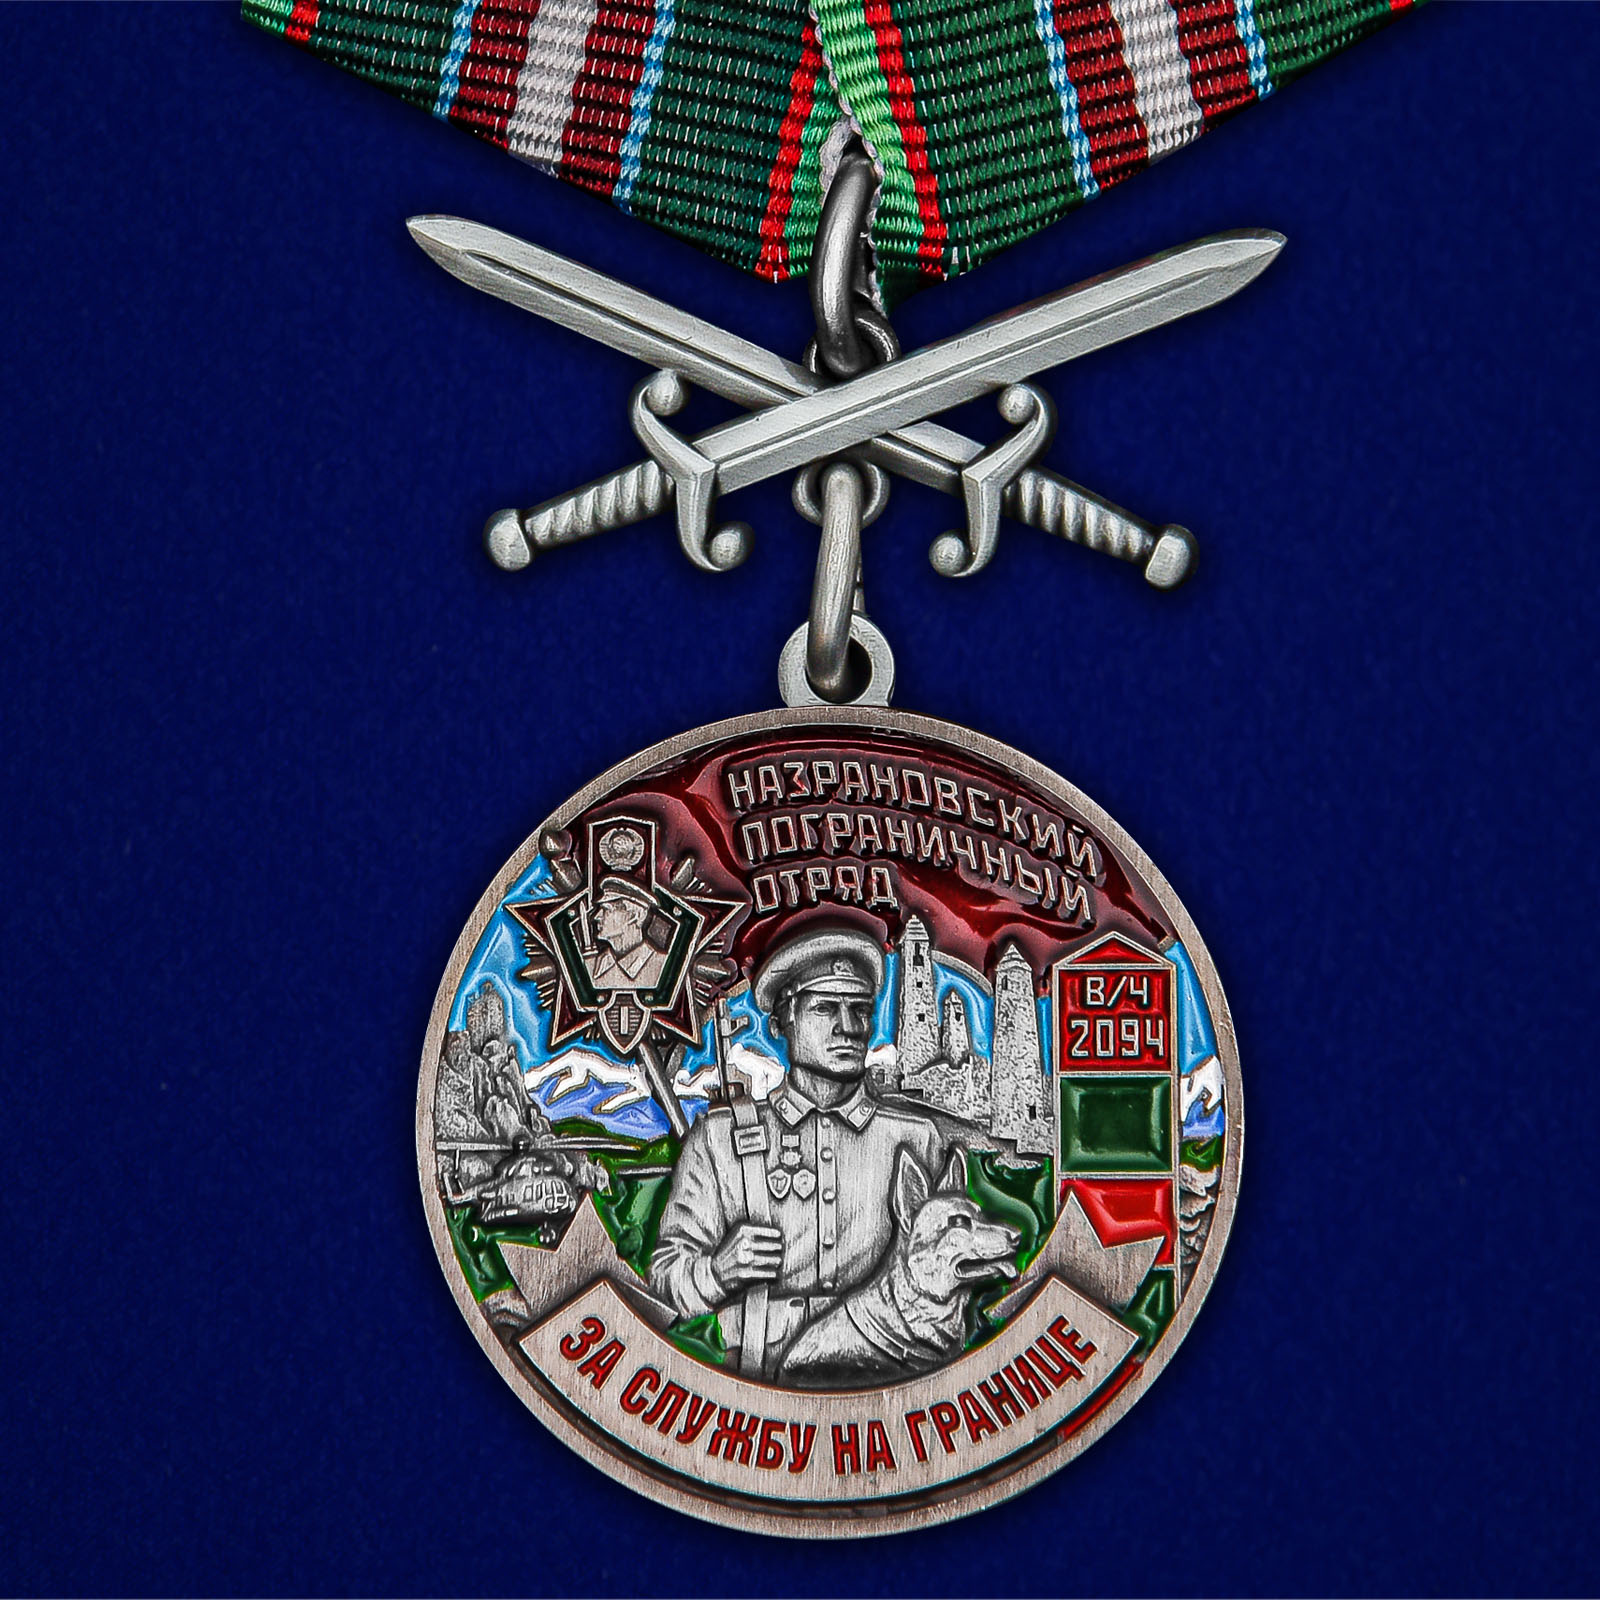 Купить медаль За службу в Назрановском пограничном отряде выгодно